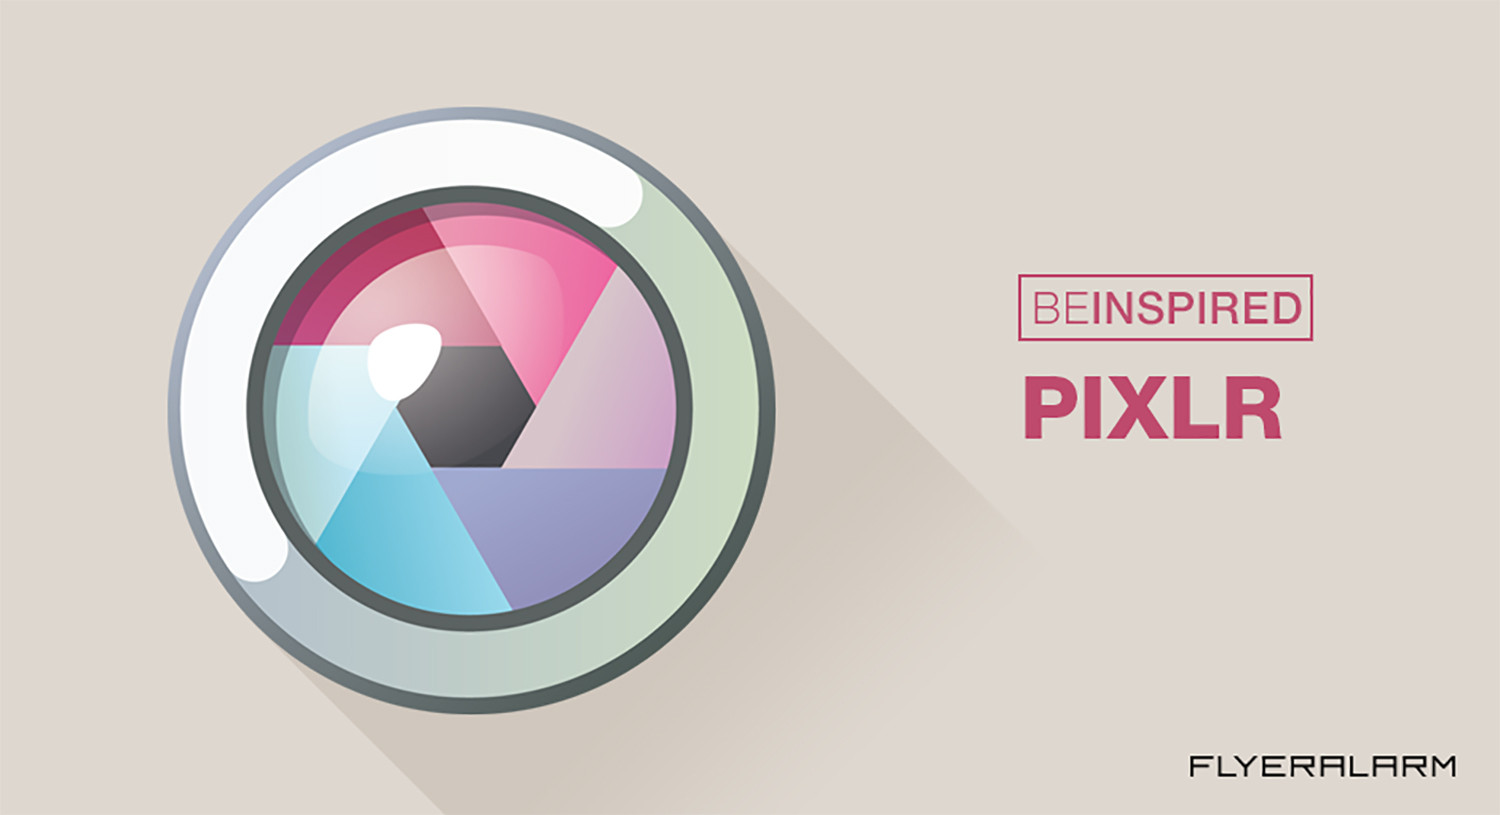 Pixlr đem lại khả năng chỉnh sửa chuyên nghiệp